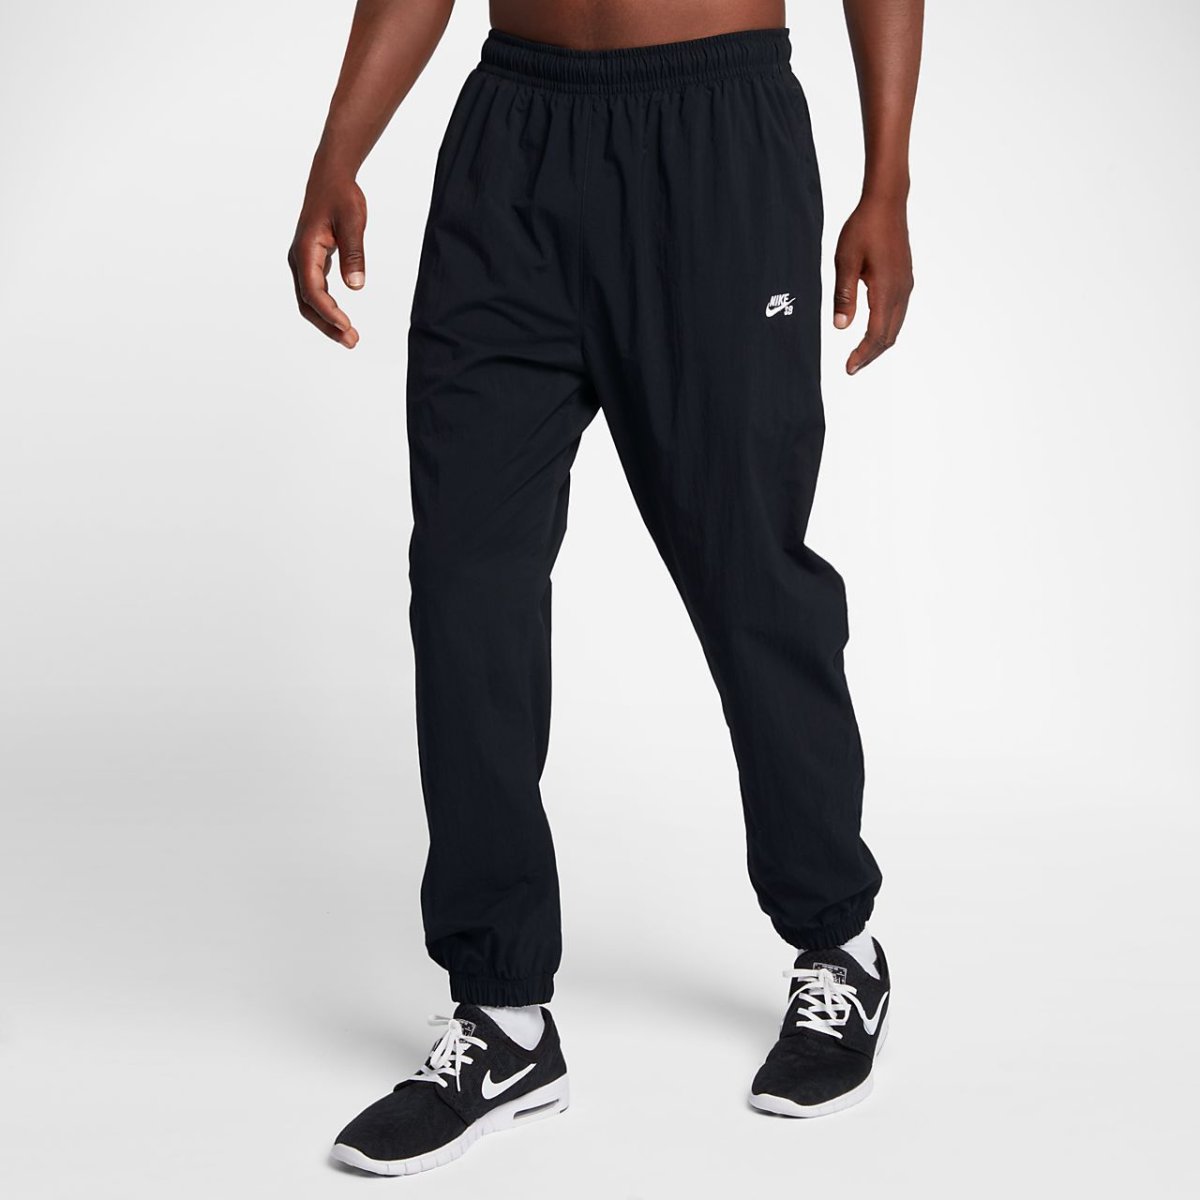 Мужские брюки Nike Therma-Fit